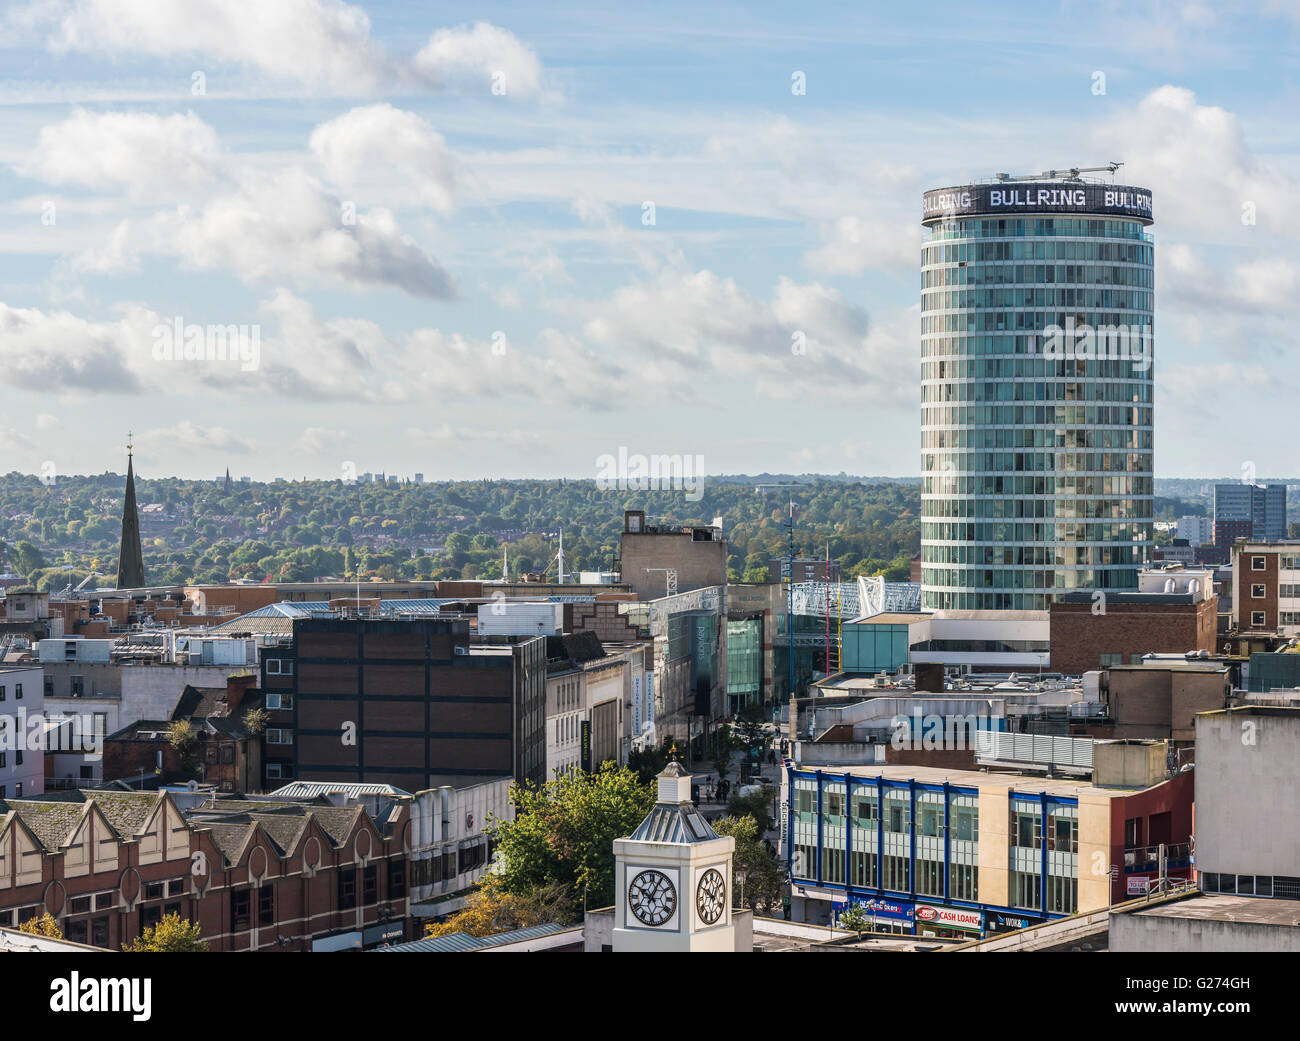 Luftaufnahme von Birmingham City Centre, England. Stockfoto